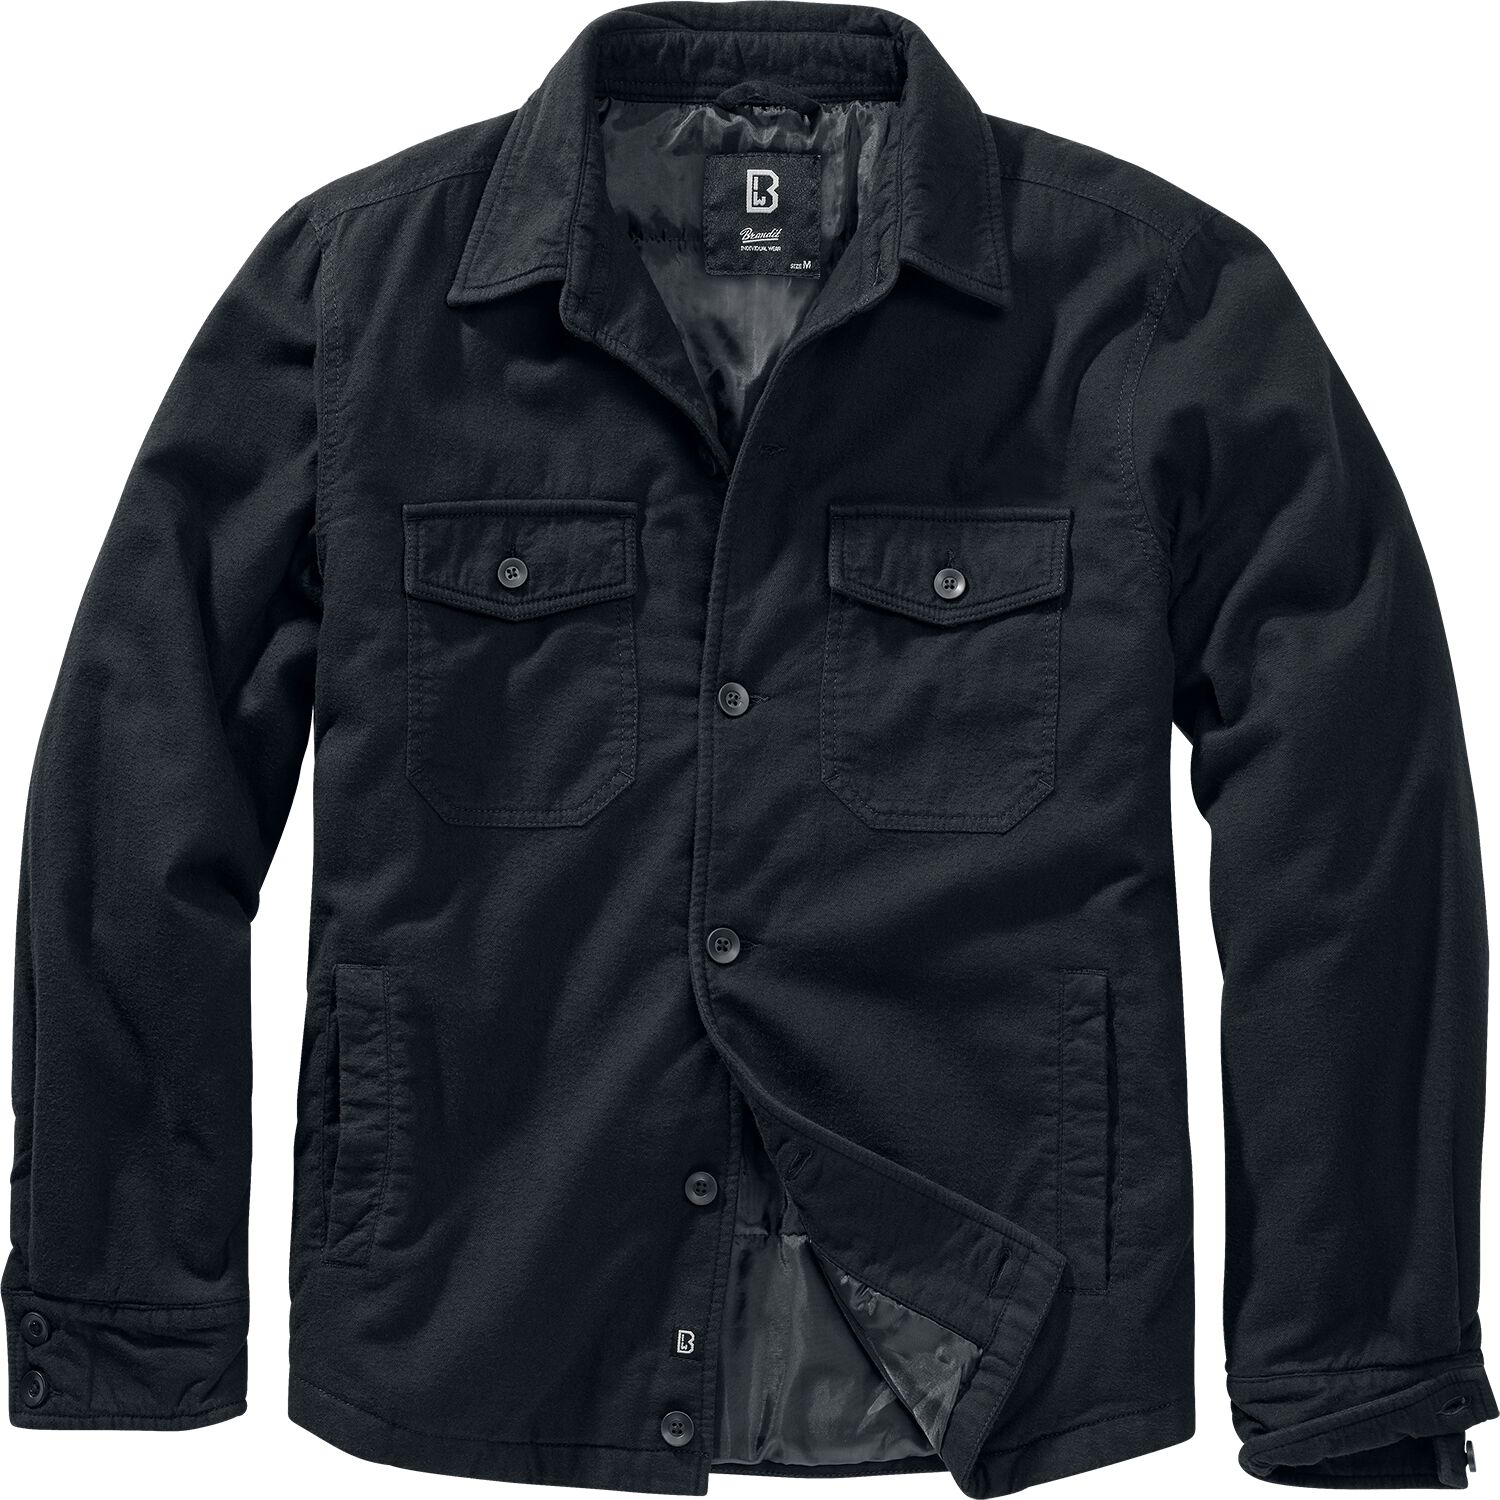 Brandit Lumberjacket Between-seasons Jacket black